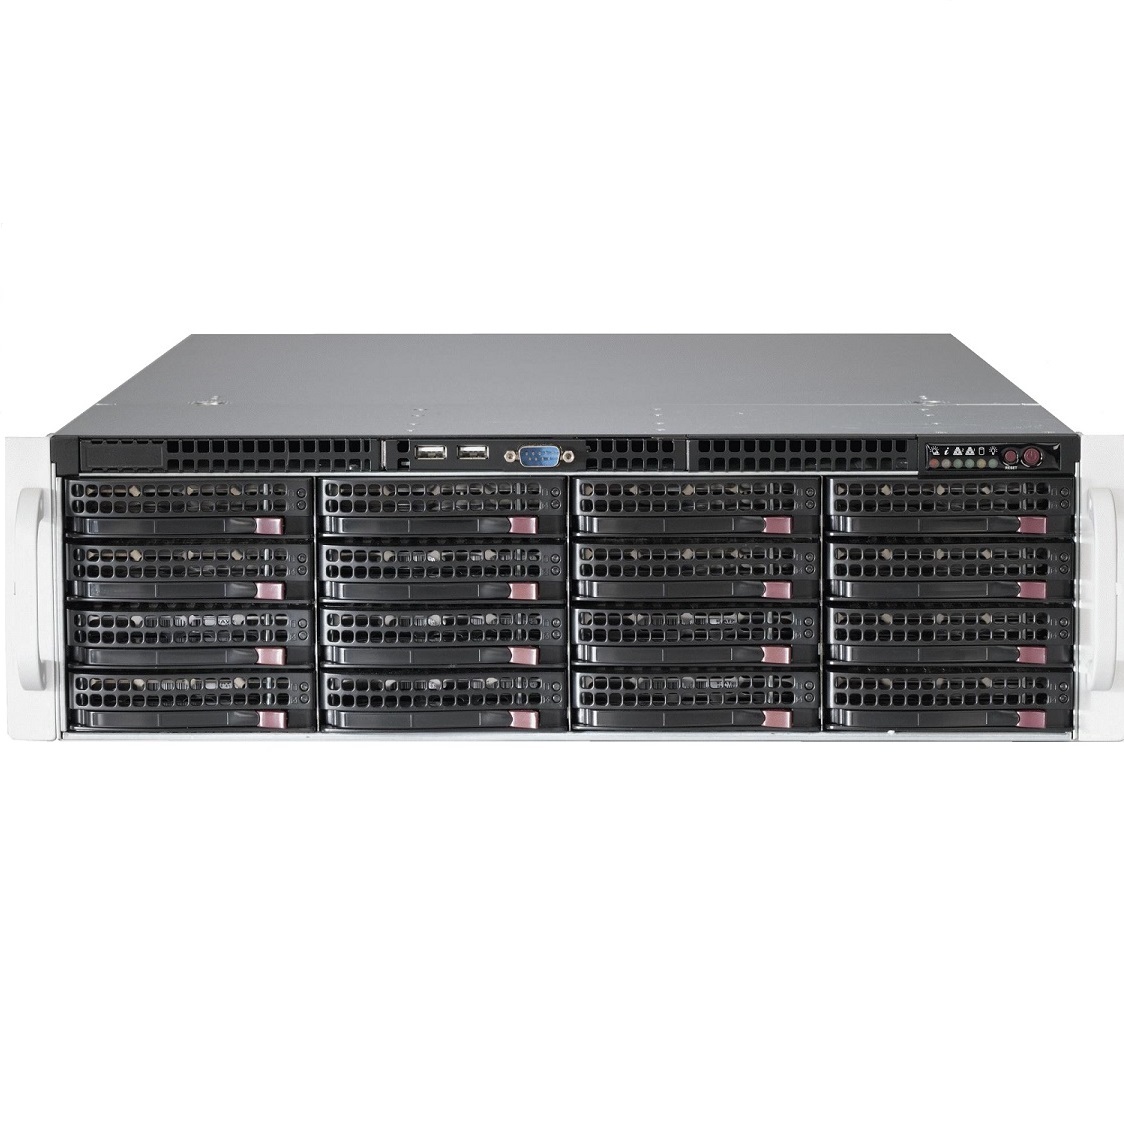 Сервер Supermicro SSG-6038R-E1CR16N - 3U, 2x920W, 2xLGA2011-r3, iC612 , 24xDDR4, 16x3.5"HDD, 4x10GbE